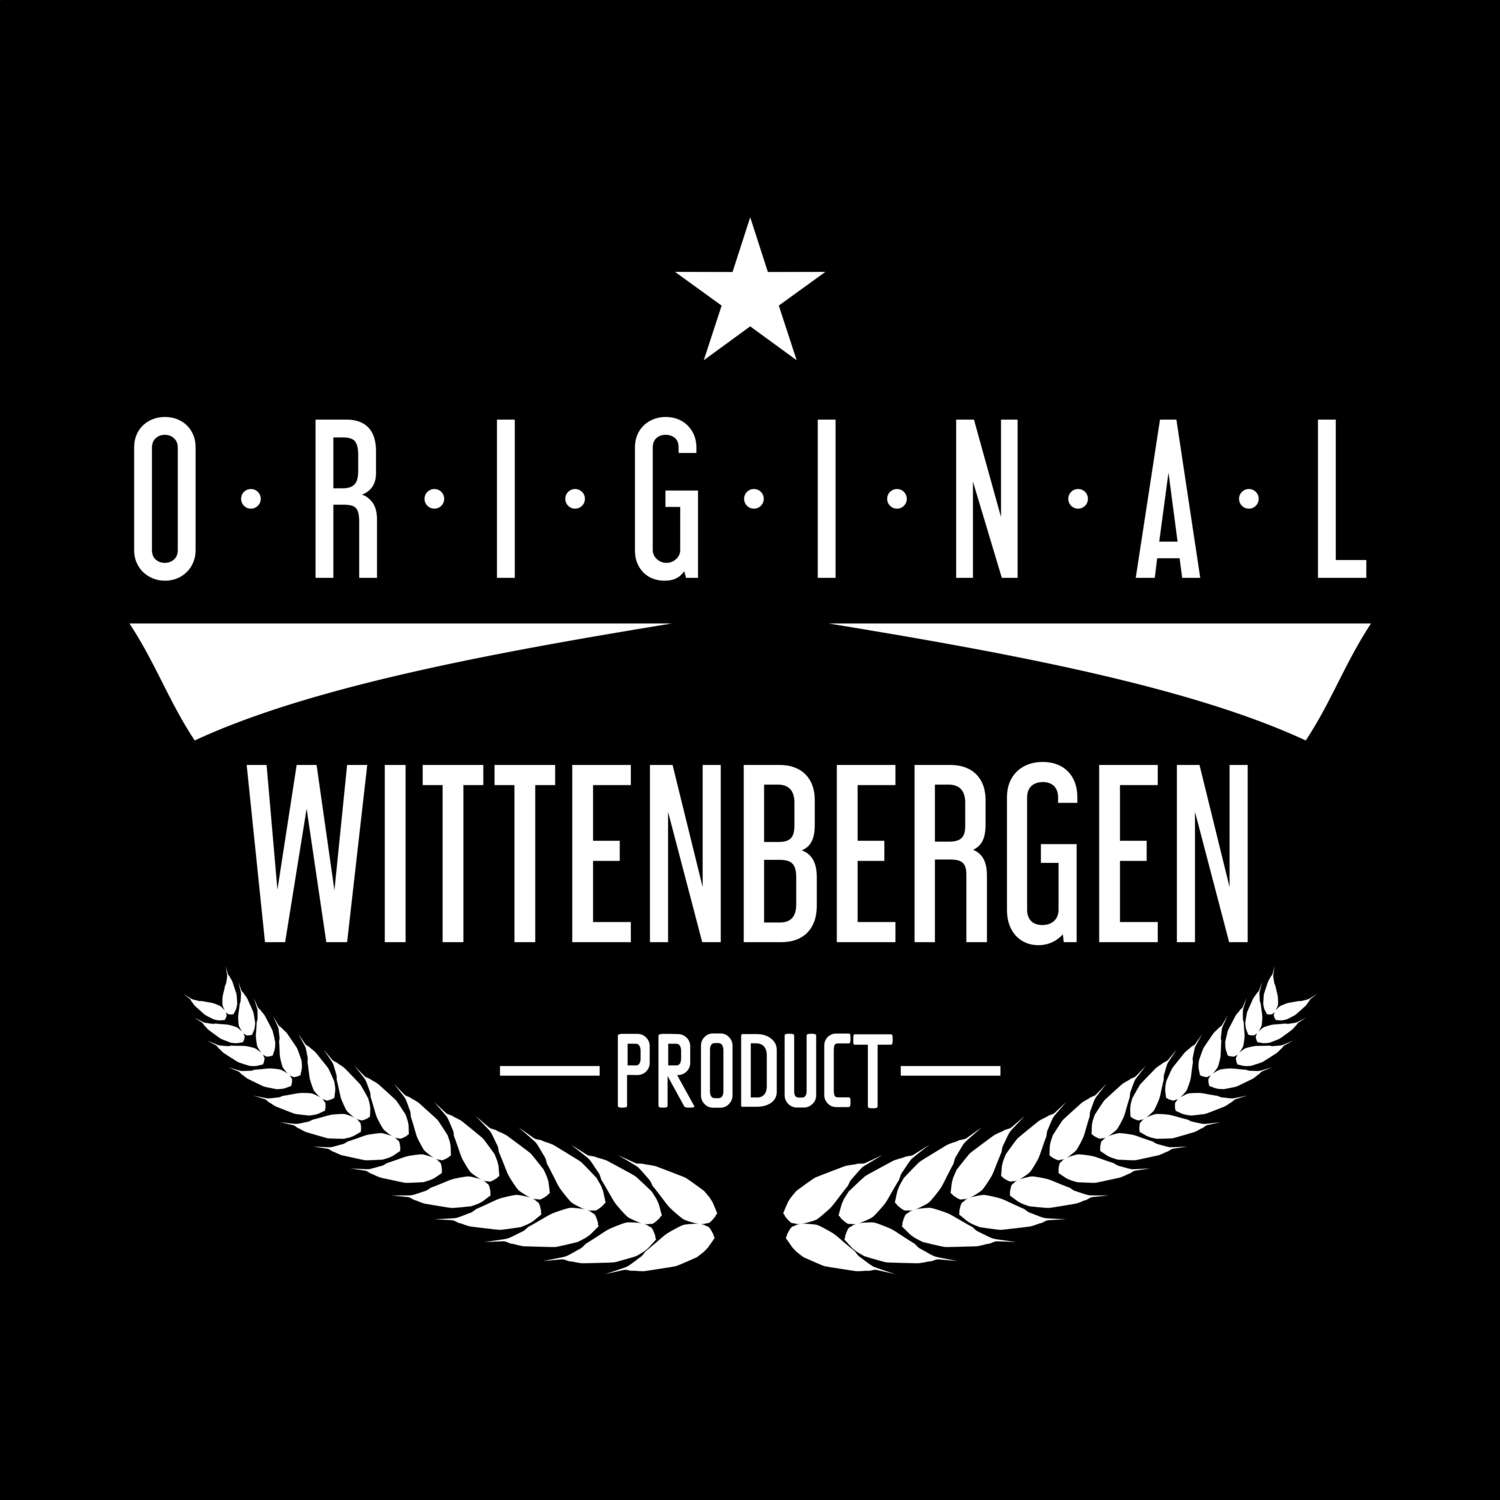 Wittenbergen T-Shirt »Original Product«